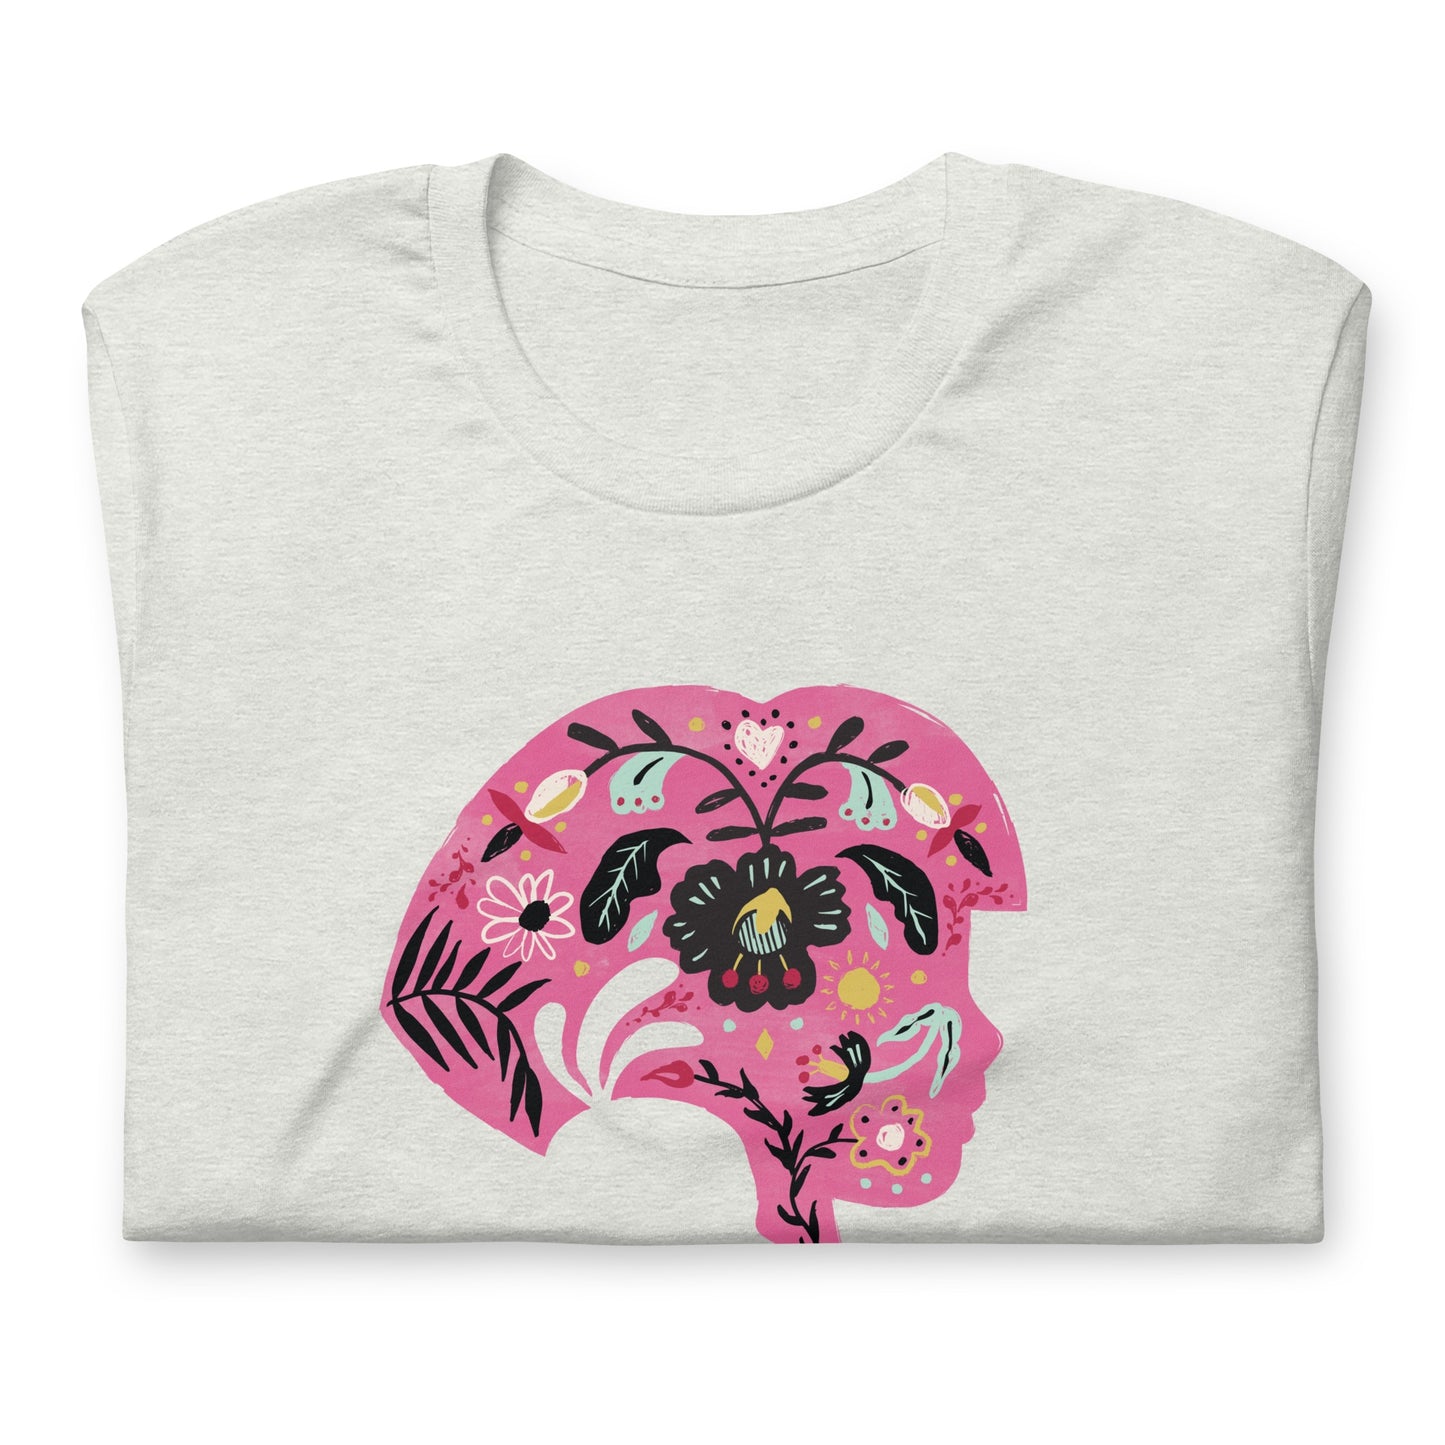 Dora the Explorer Floral Design Adult Short Sleeve T-Shirt